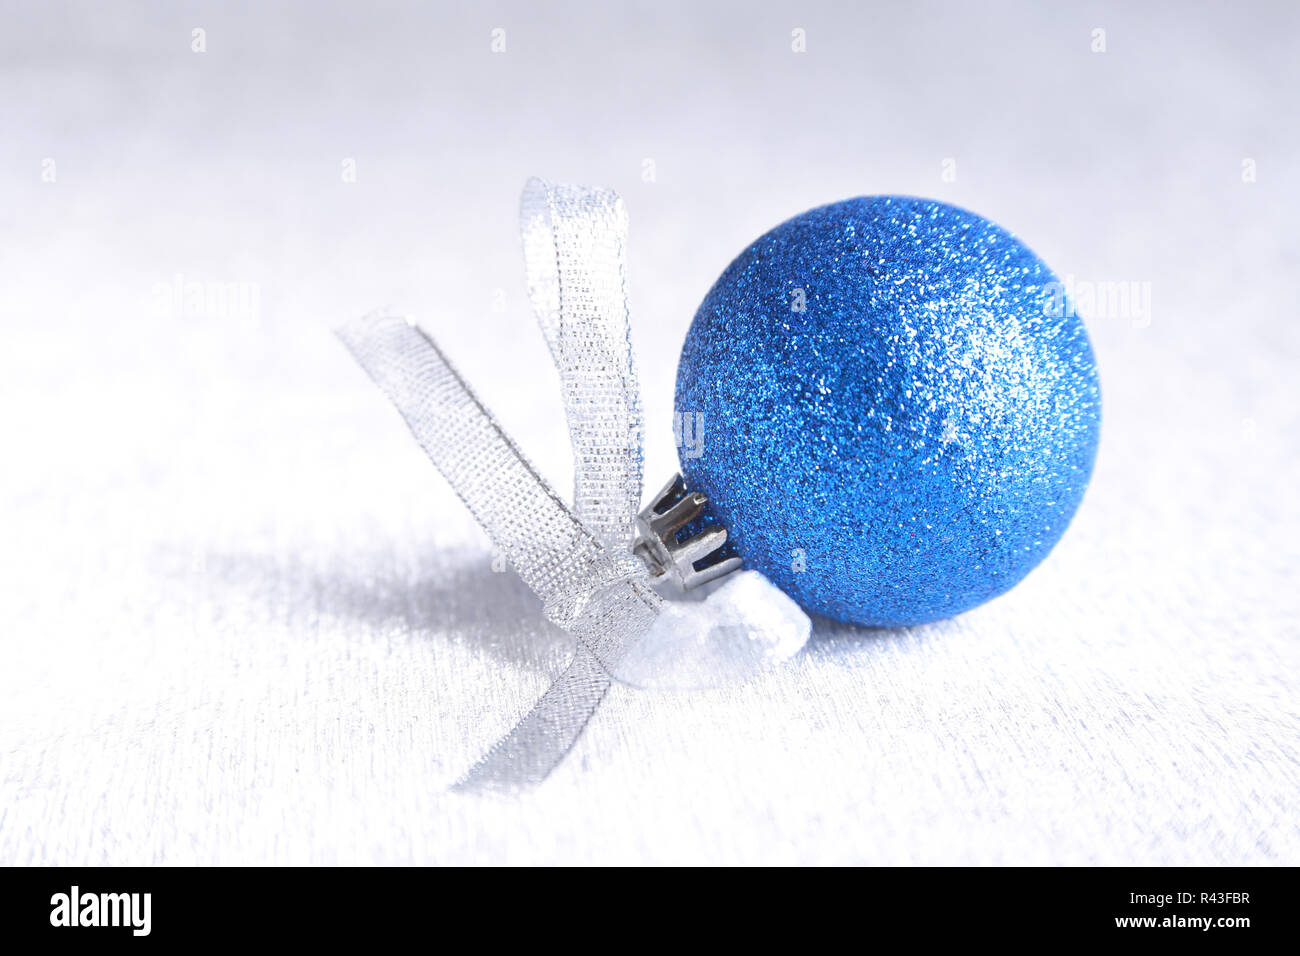 Weihnachten oder Urlaub Komposition mit blau silber Kugeln auf bauschige Federn mit Schnee und Schneeflocken Stockfoto